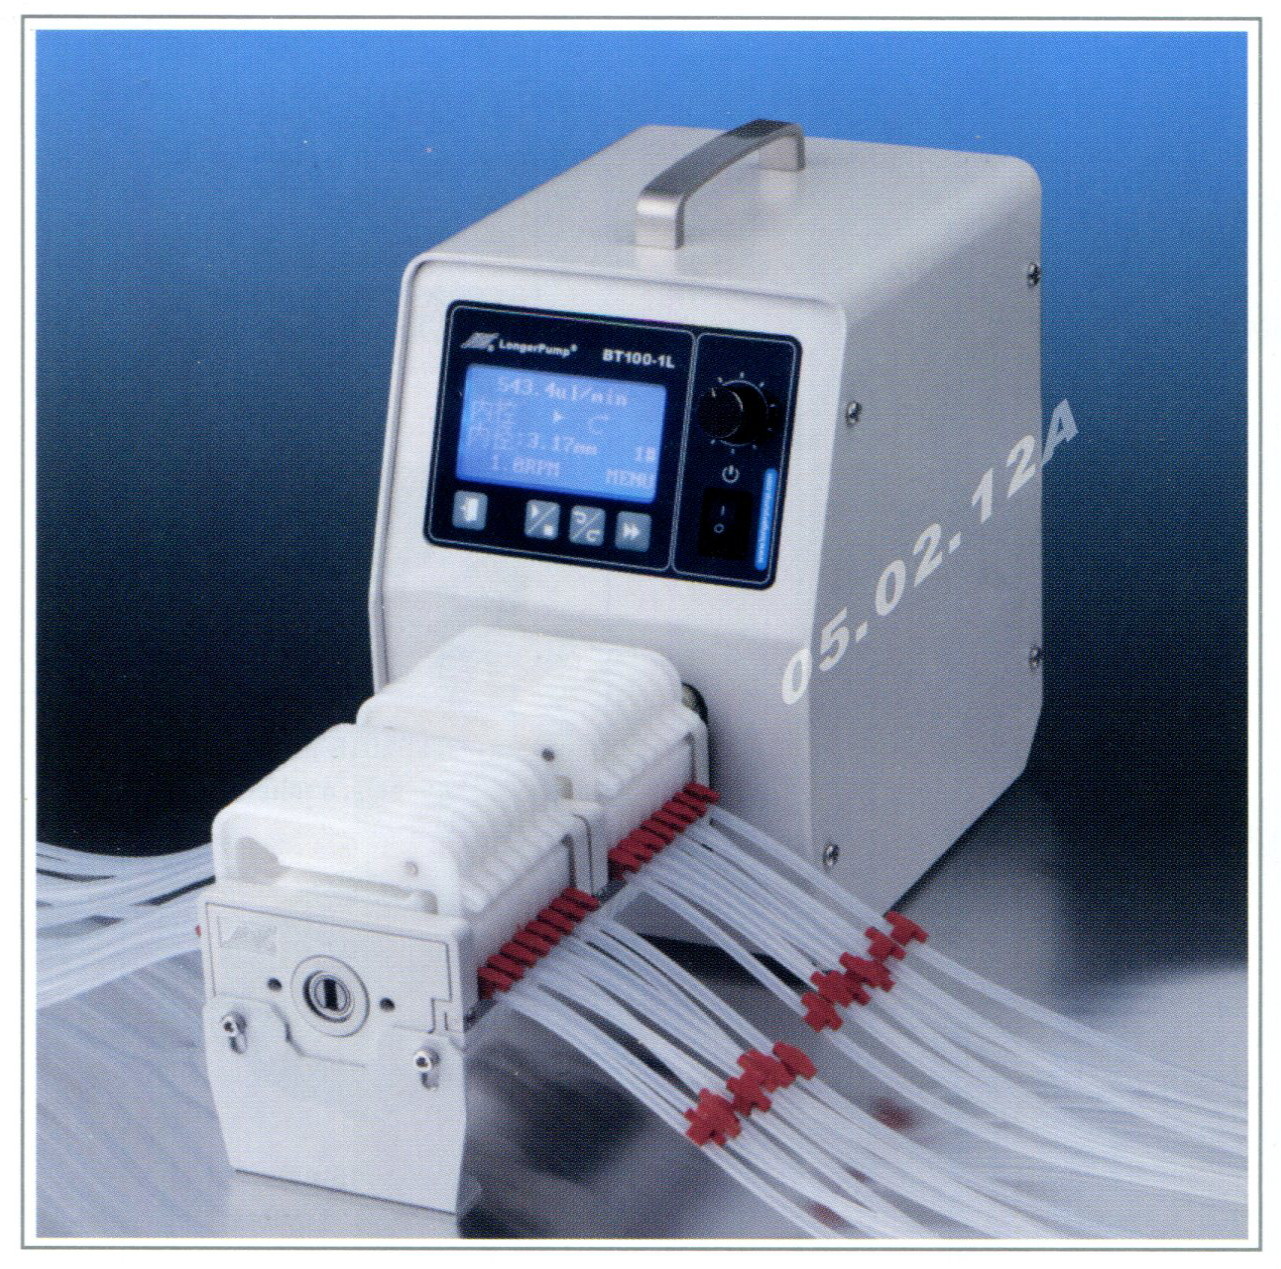 Longer pump, Peristaltic pump, BT100-1L